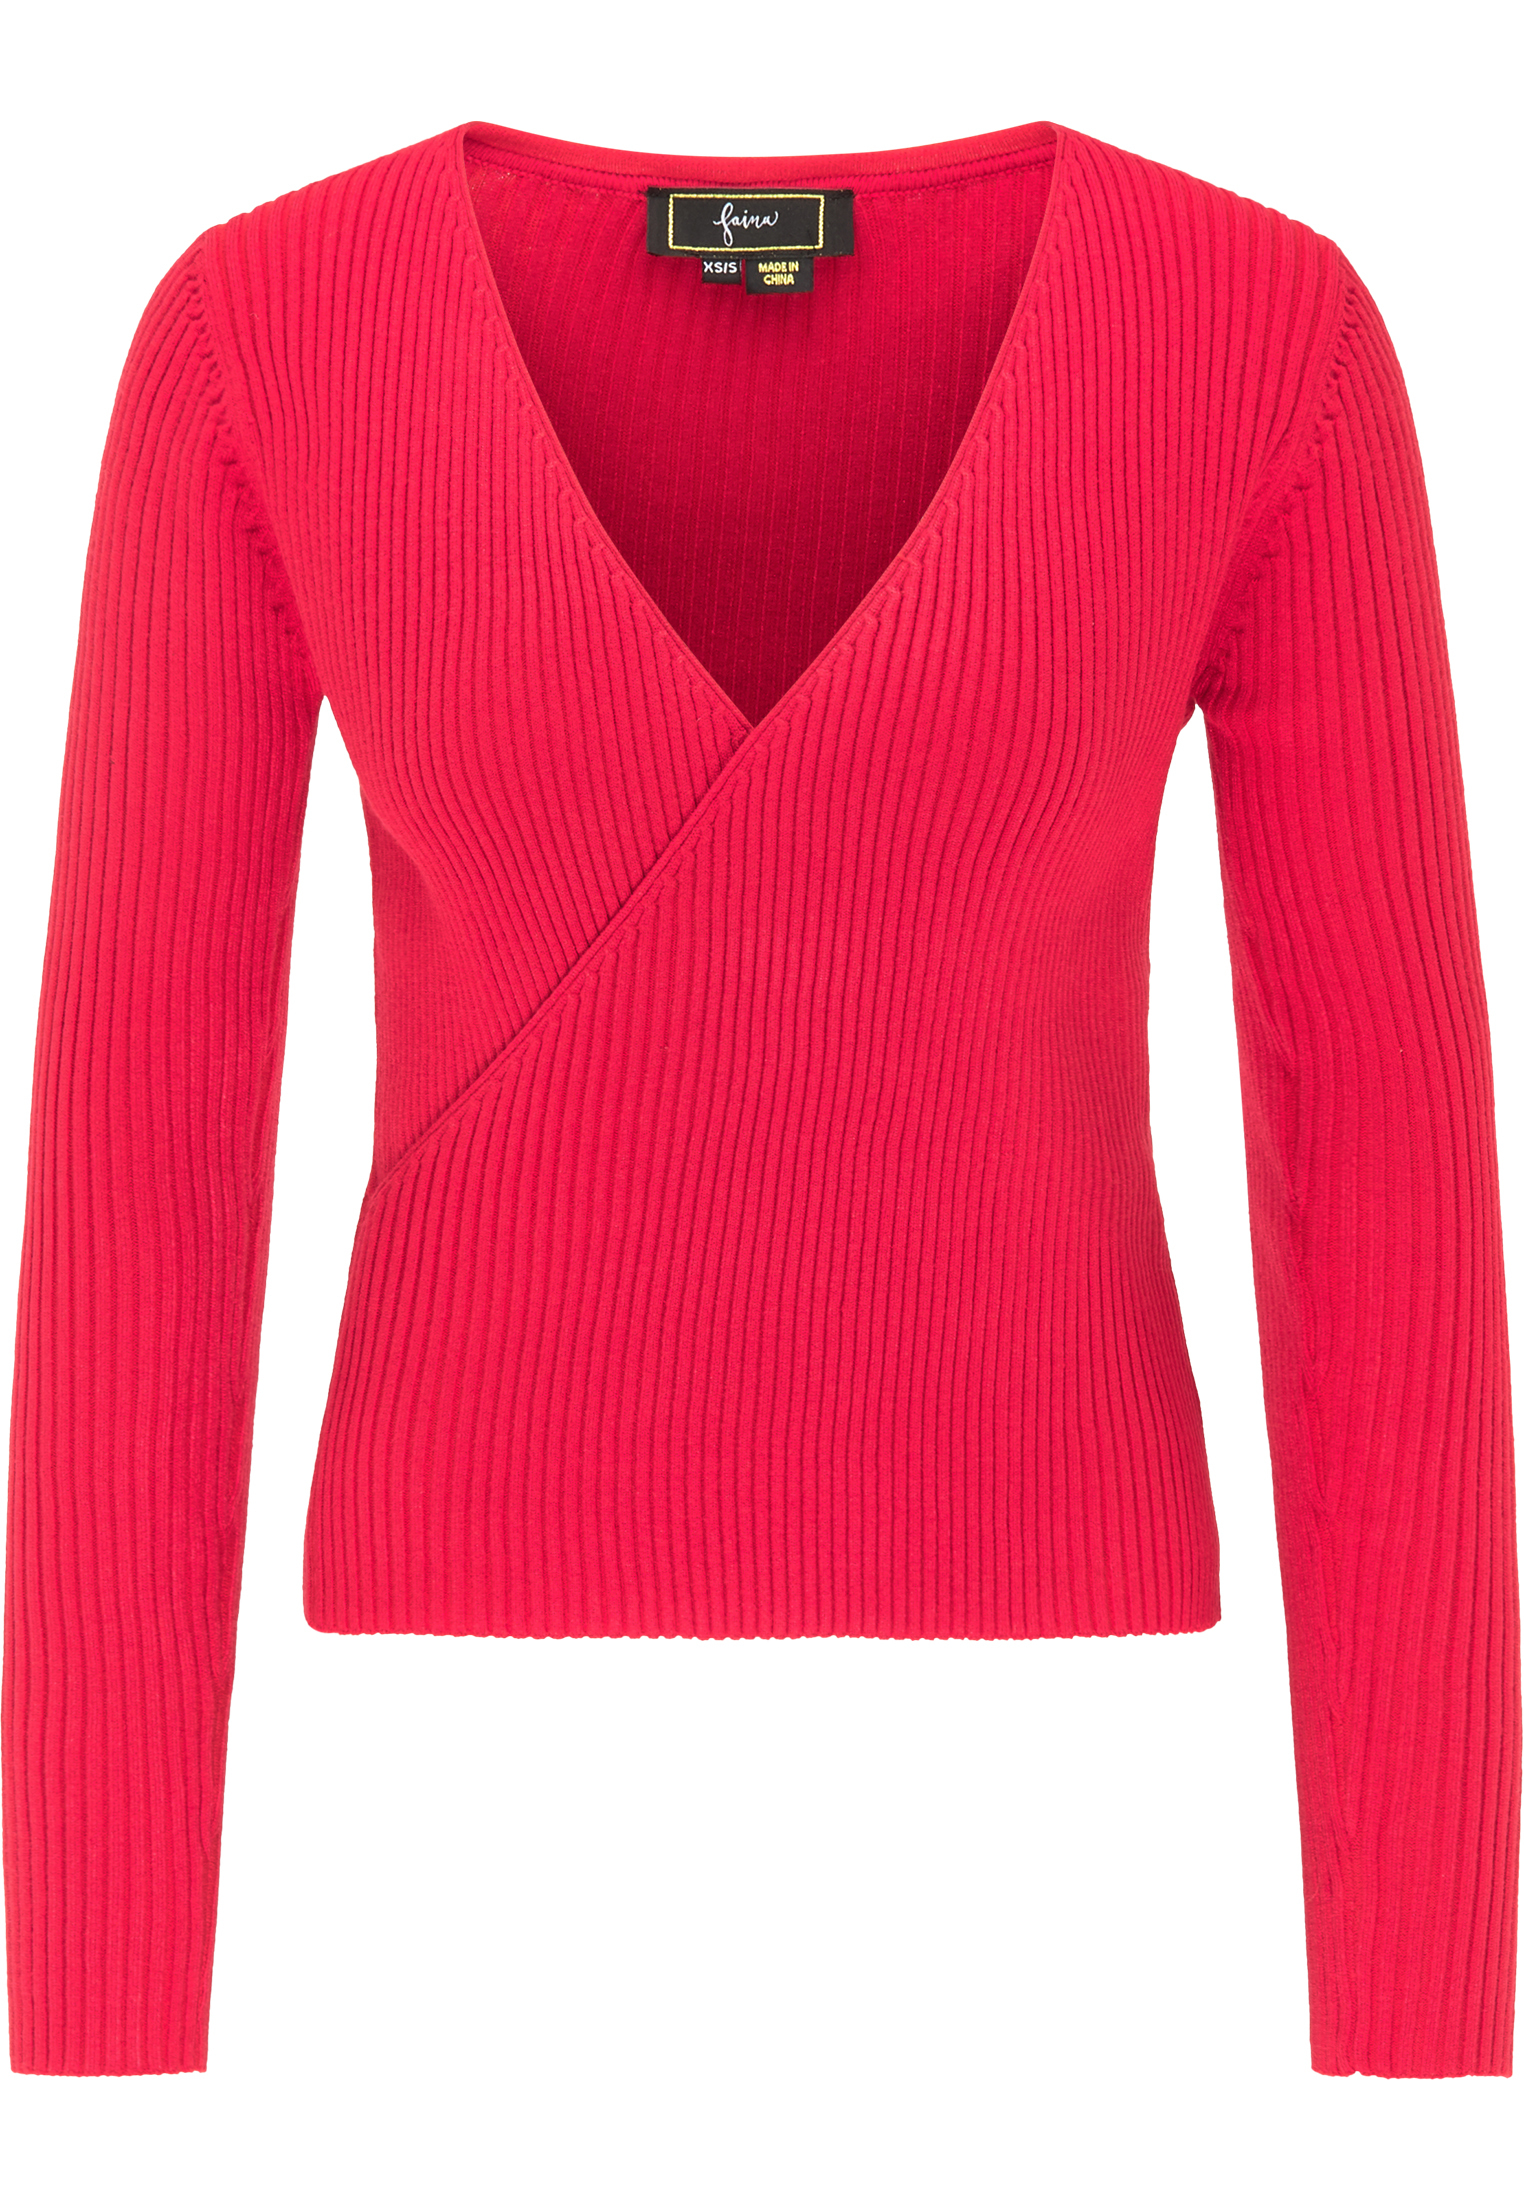 Odzież Swetry & dzianina faina Sweter w kolorze Różowym 